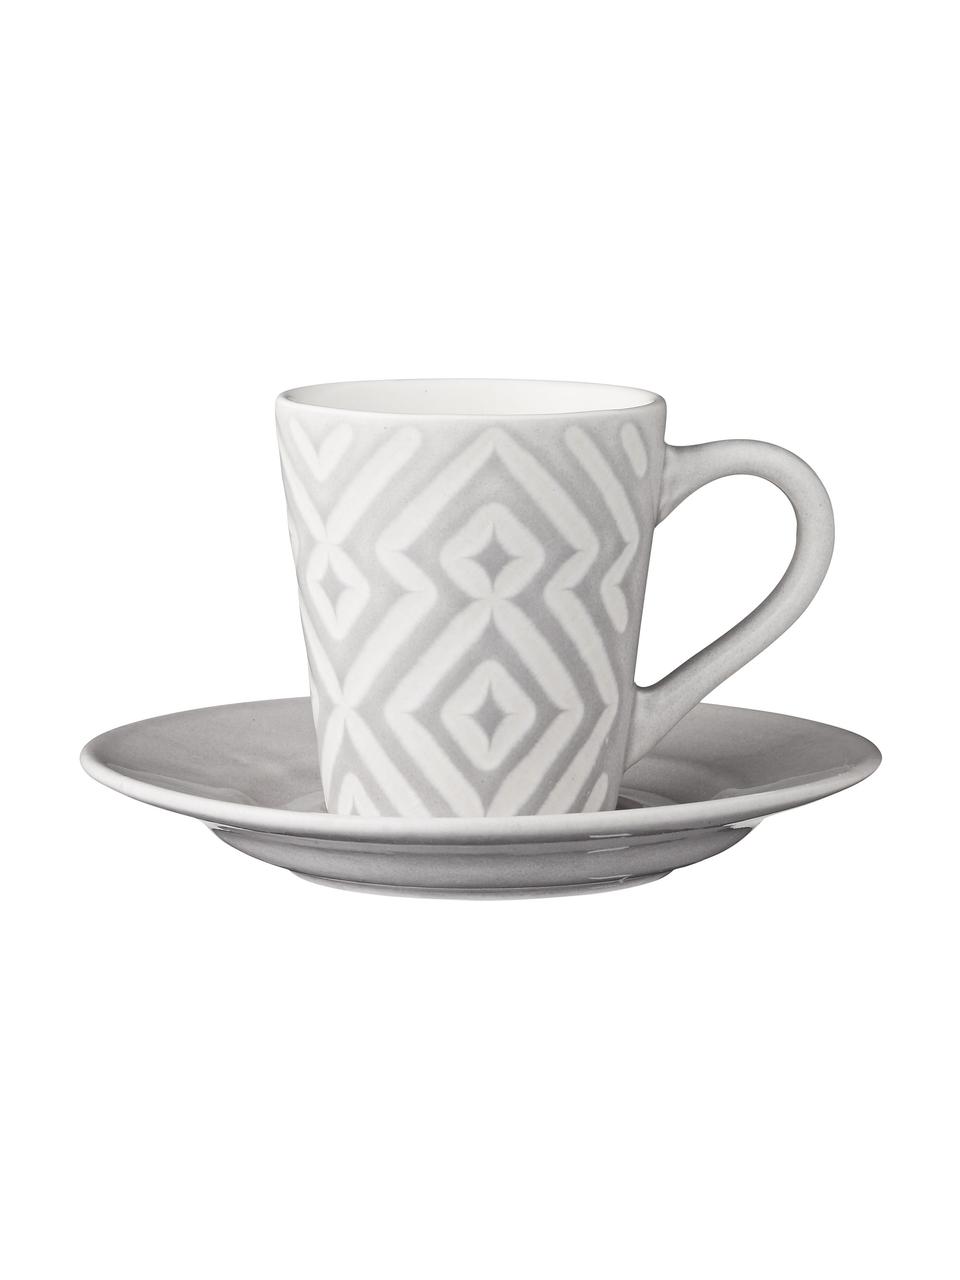 Espressotassen Abella mit Untertassen in Grau/Weiß mit Strukturmuster, 4 Stück, Keramik, Grau, Weiß, Ø 12 x H 7 cm